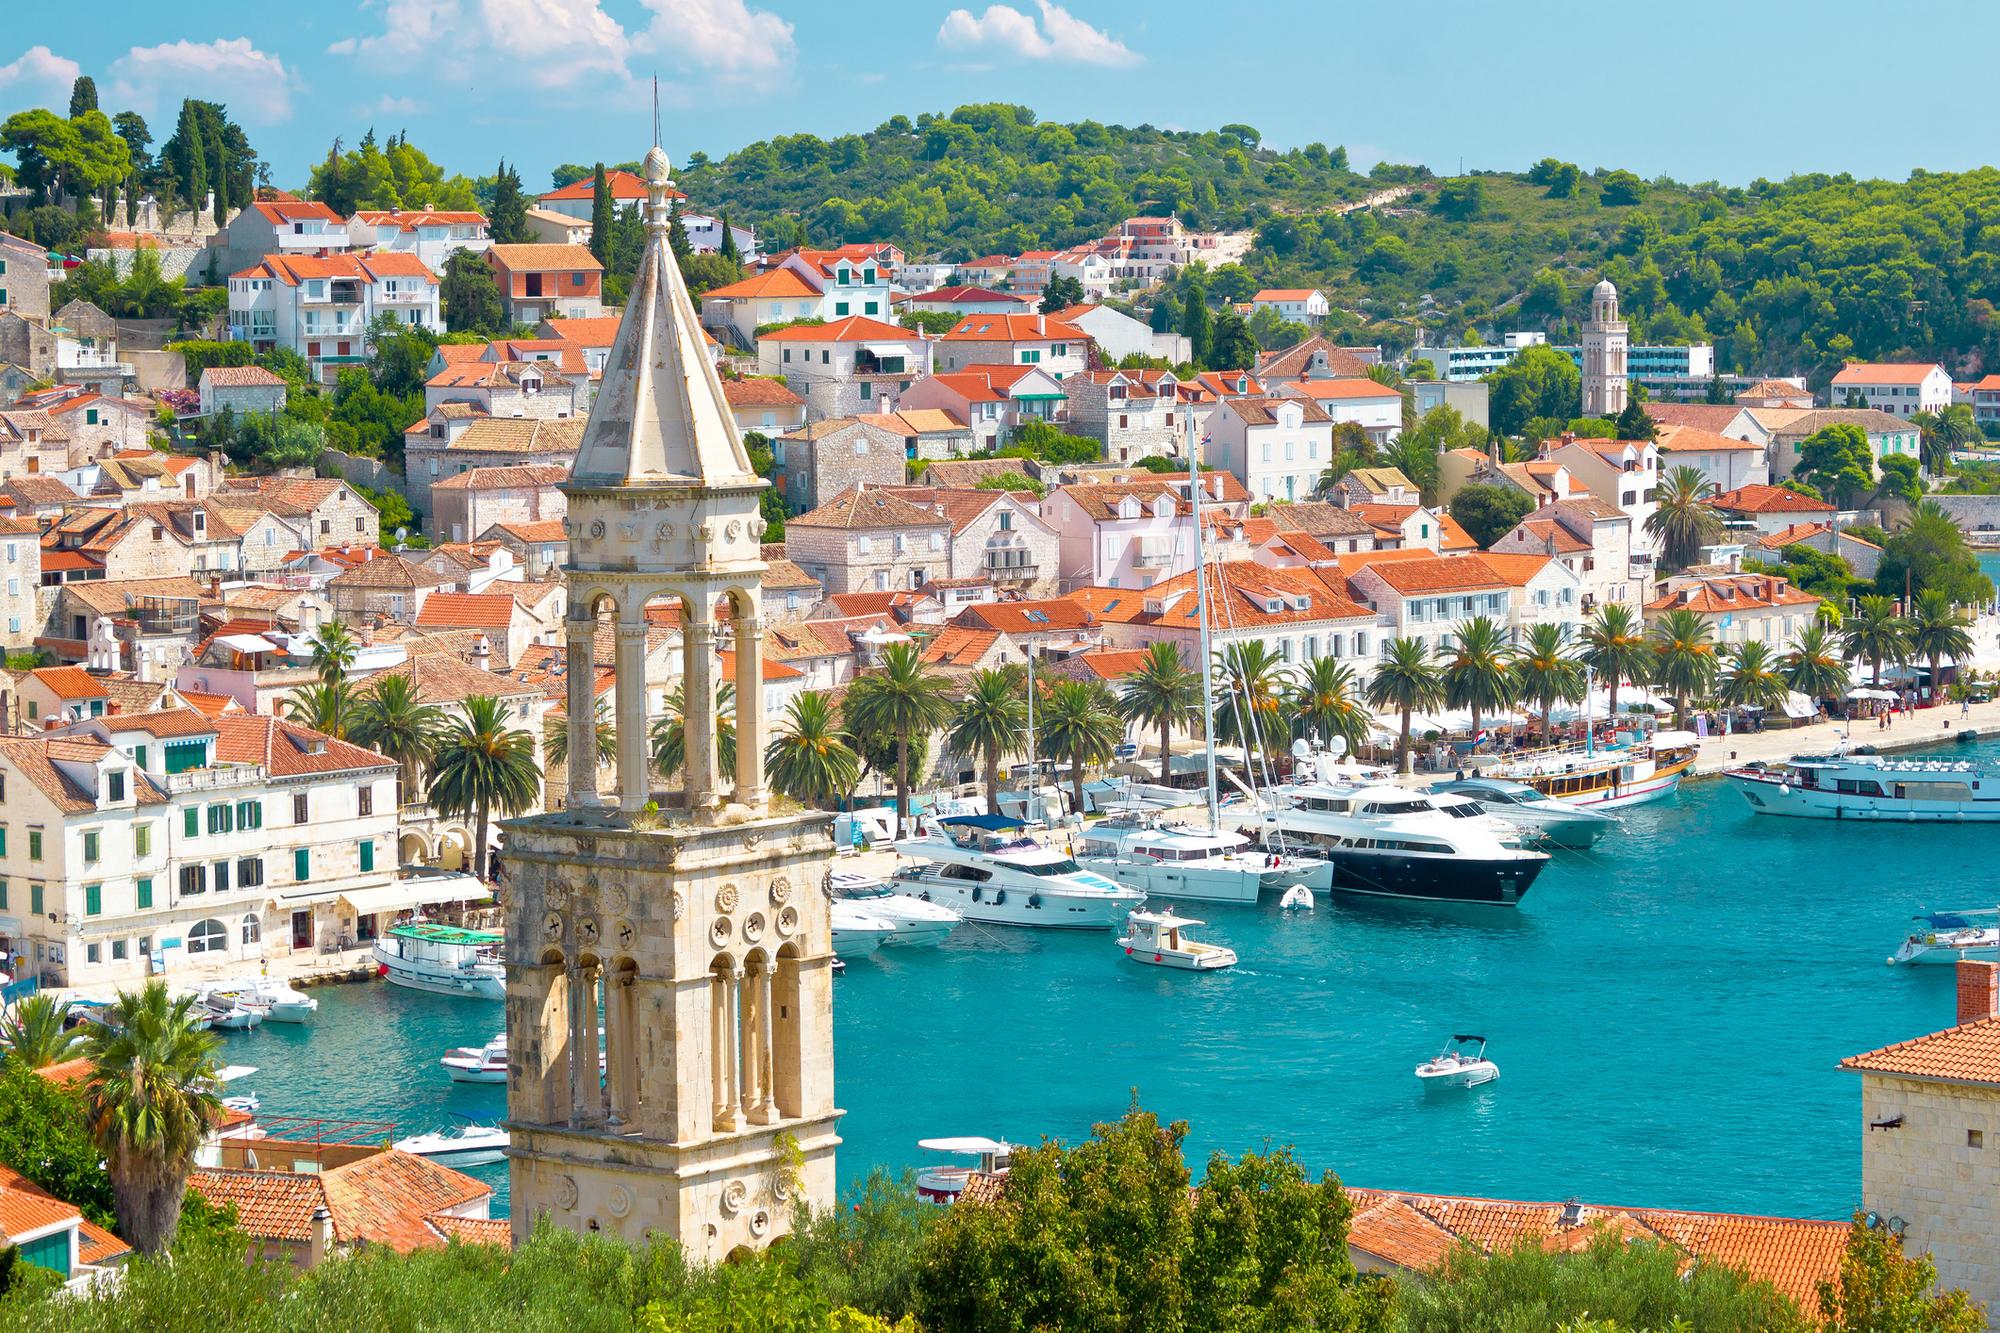 Dovolenka na chorvátskom ostrove Hvar patrí medzi finančne náročnejšie.